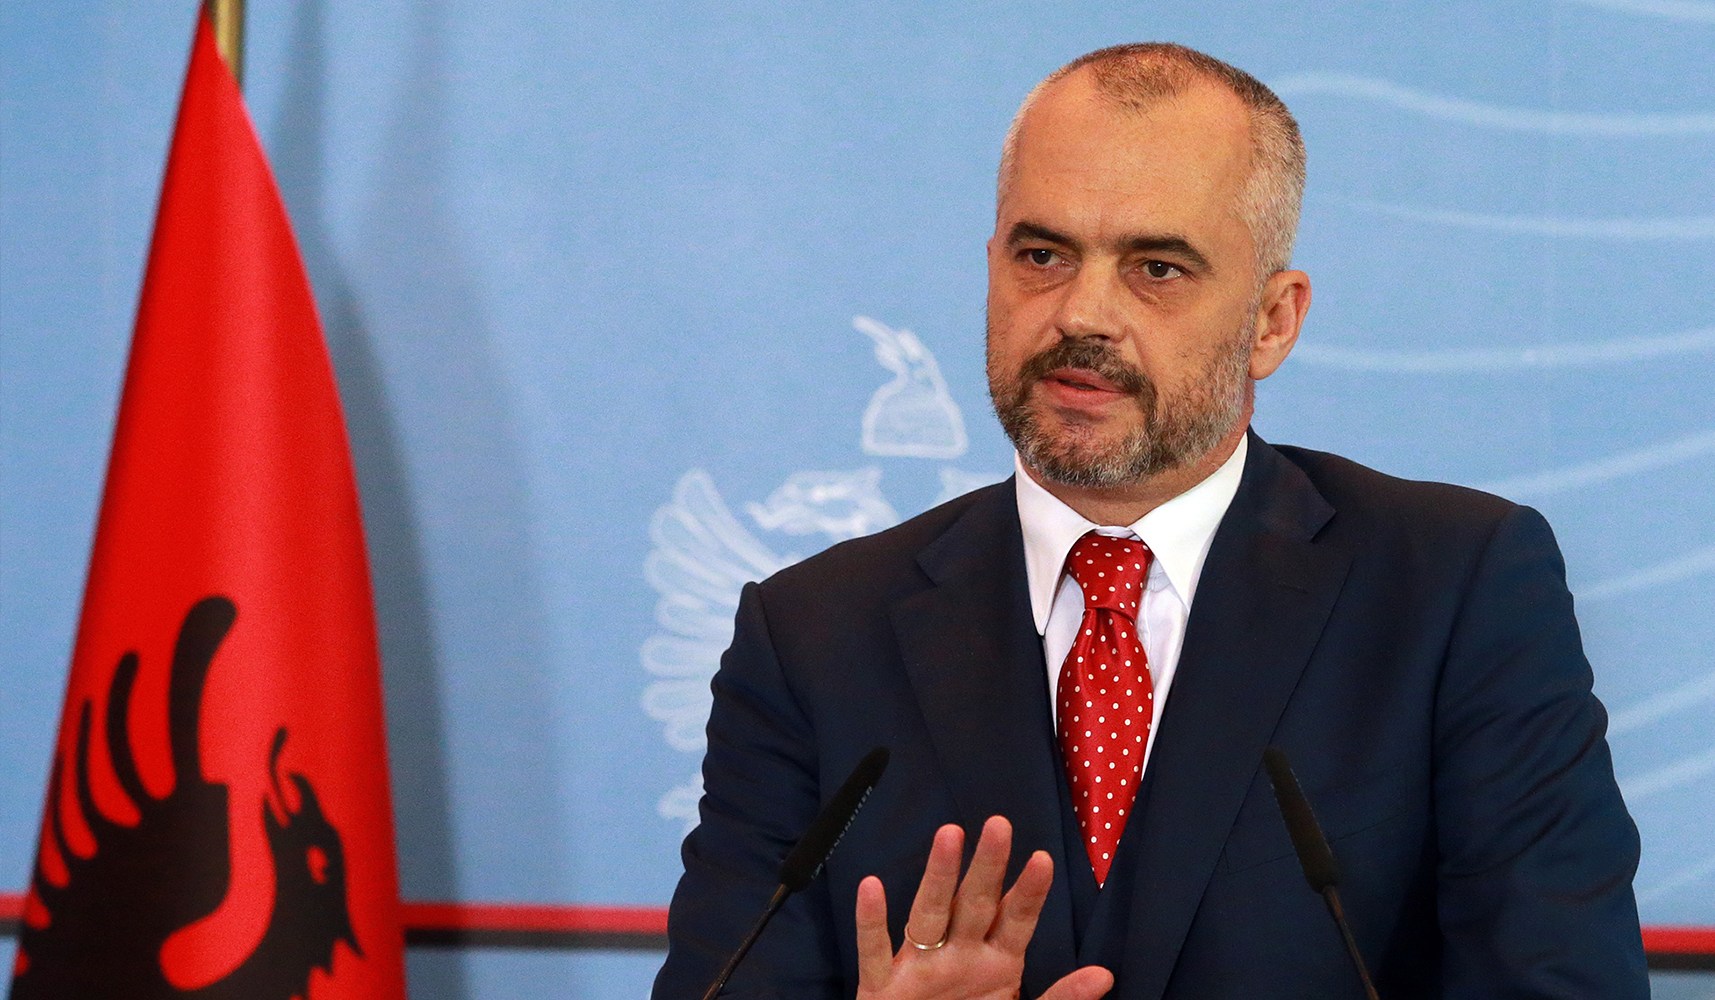 Ο Ε.Ράμα «λαδώνει» αξιωματούχους της ΕΕ και των ΗΠΑ για να έχει την στήριξή τους – Τι αποκαλύπτει Αλβανός αναλυτής